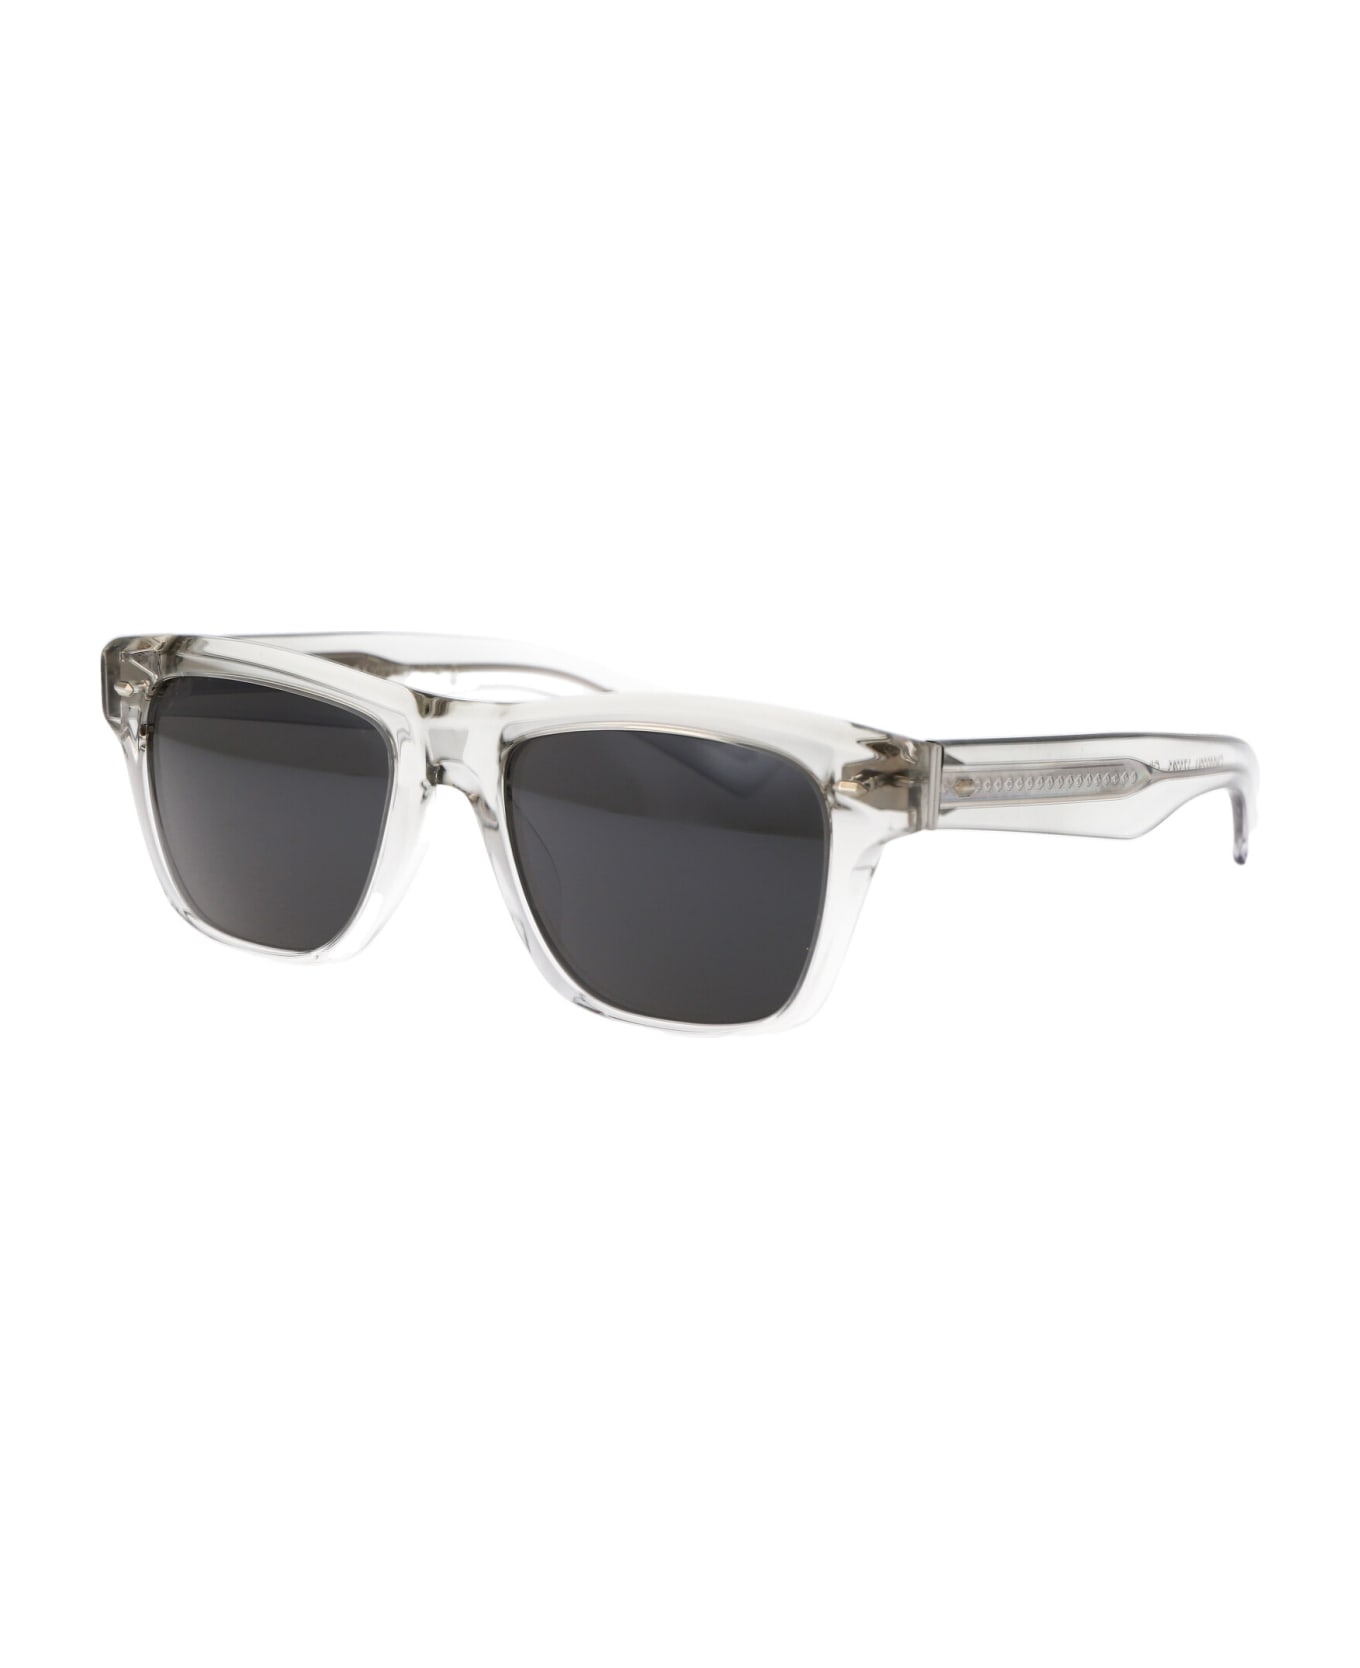 Oliver Peoples Oliver Sixties Sun Sunglasses - 1752R5 Black Diamond/Crystal Gradient サングラス